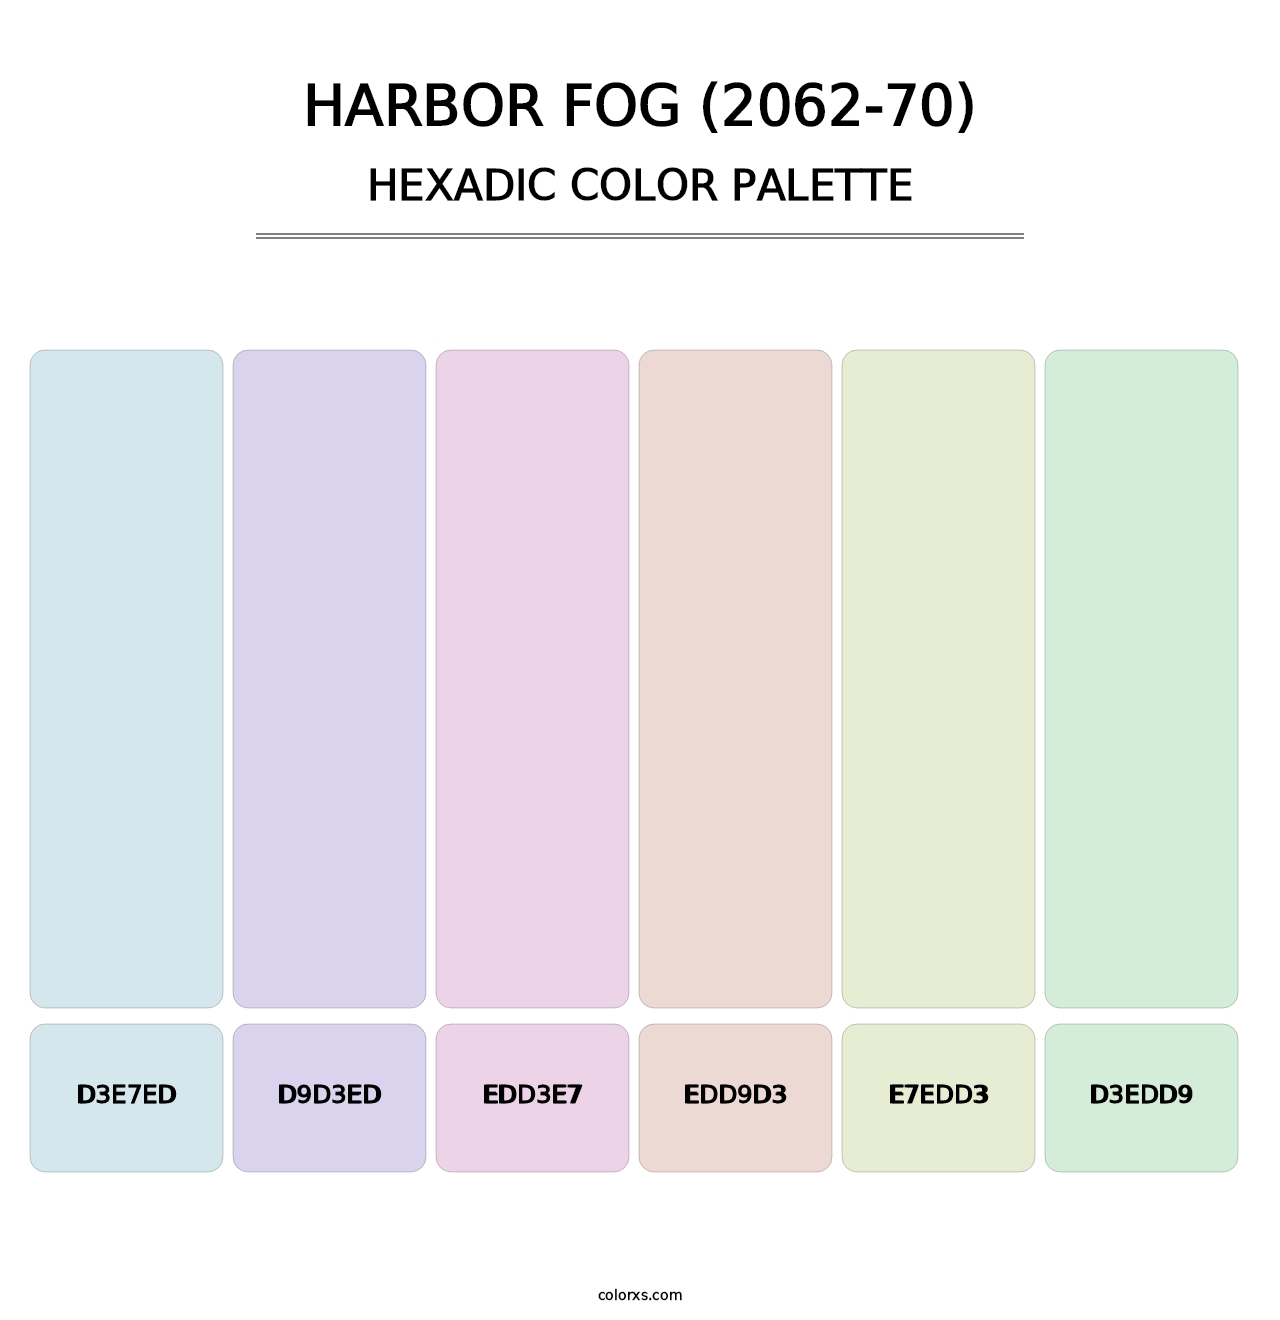 Harbor Fog (2062-70) - Hexadic Color Palette